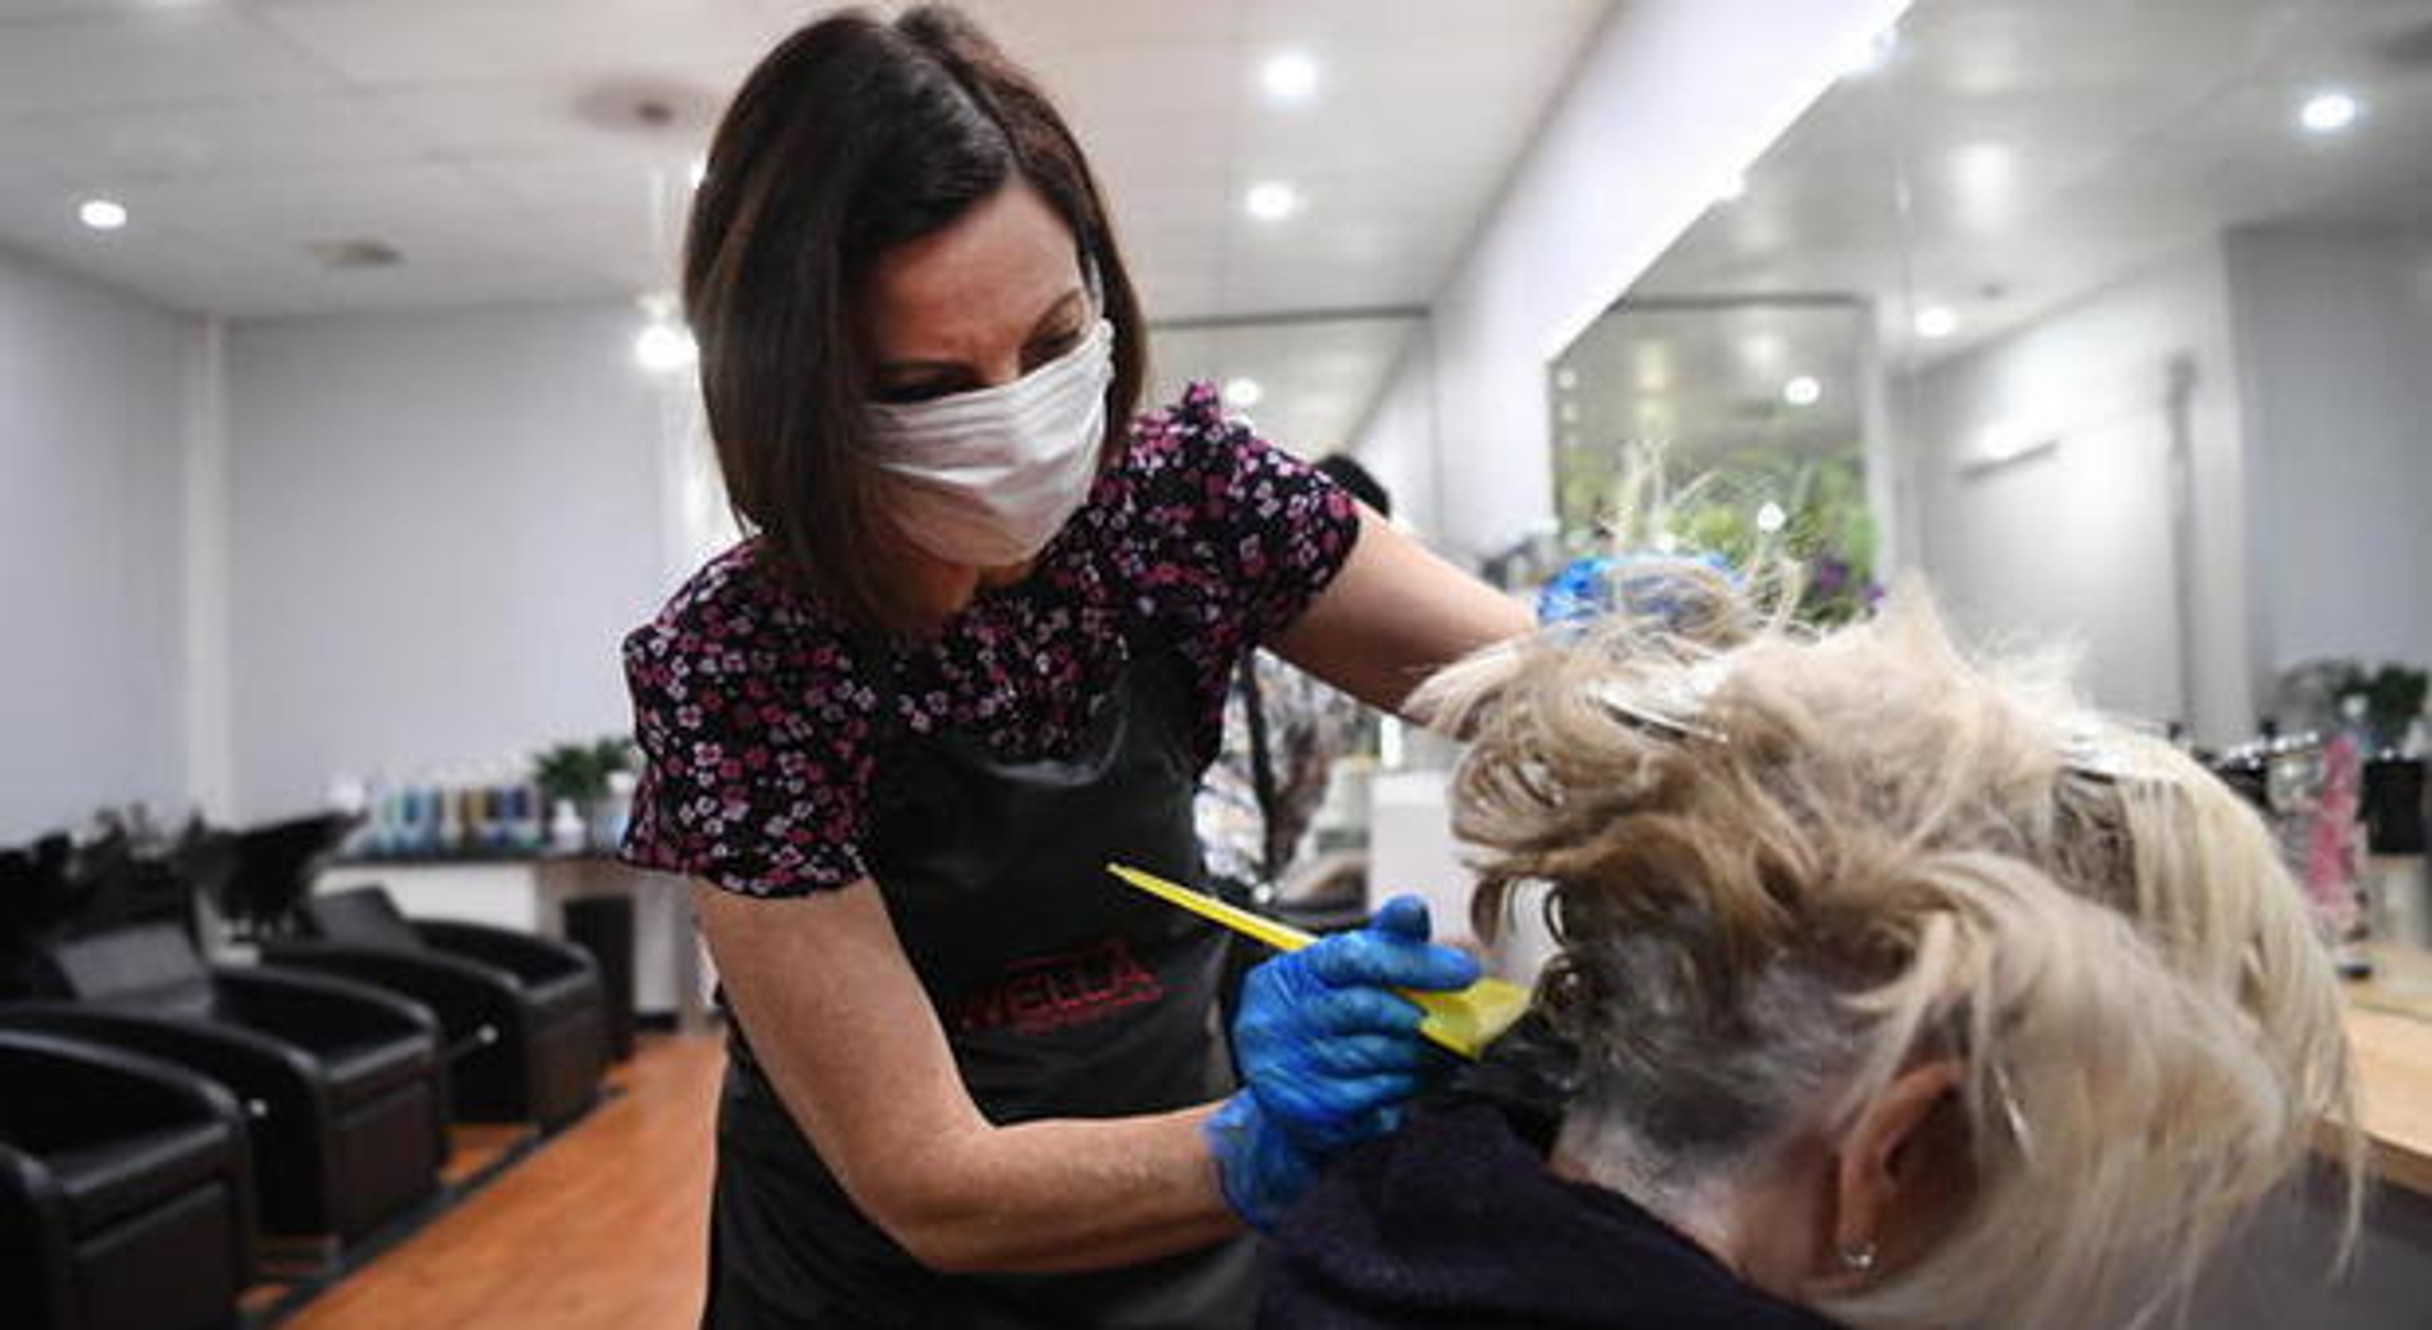 Taglio, tinta e vaccino: a Palermo parrucchiere propone immunizzazione nei saloni di bellezza